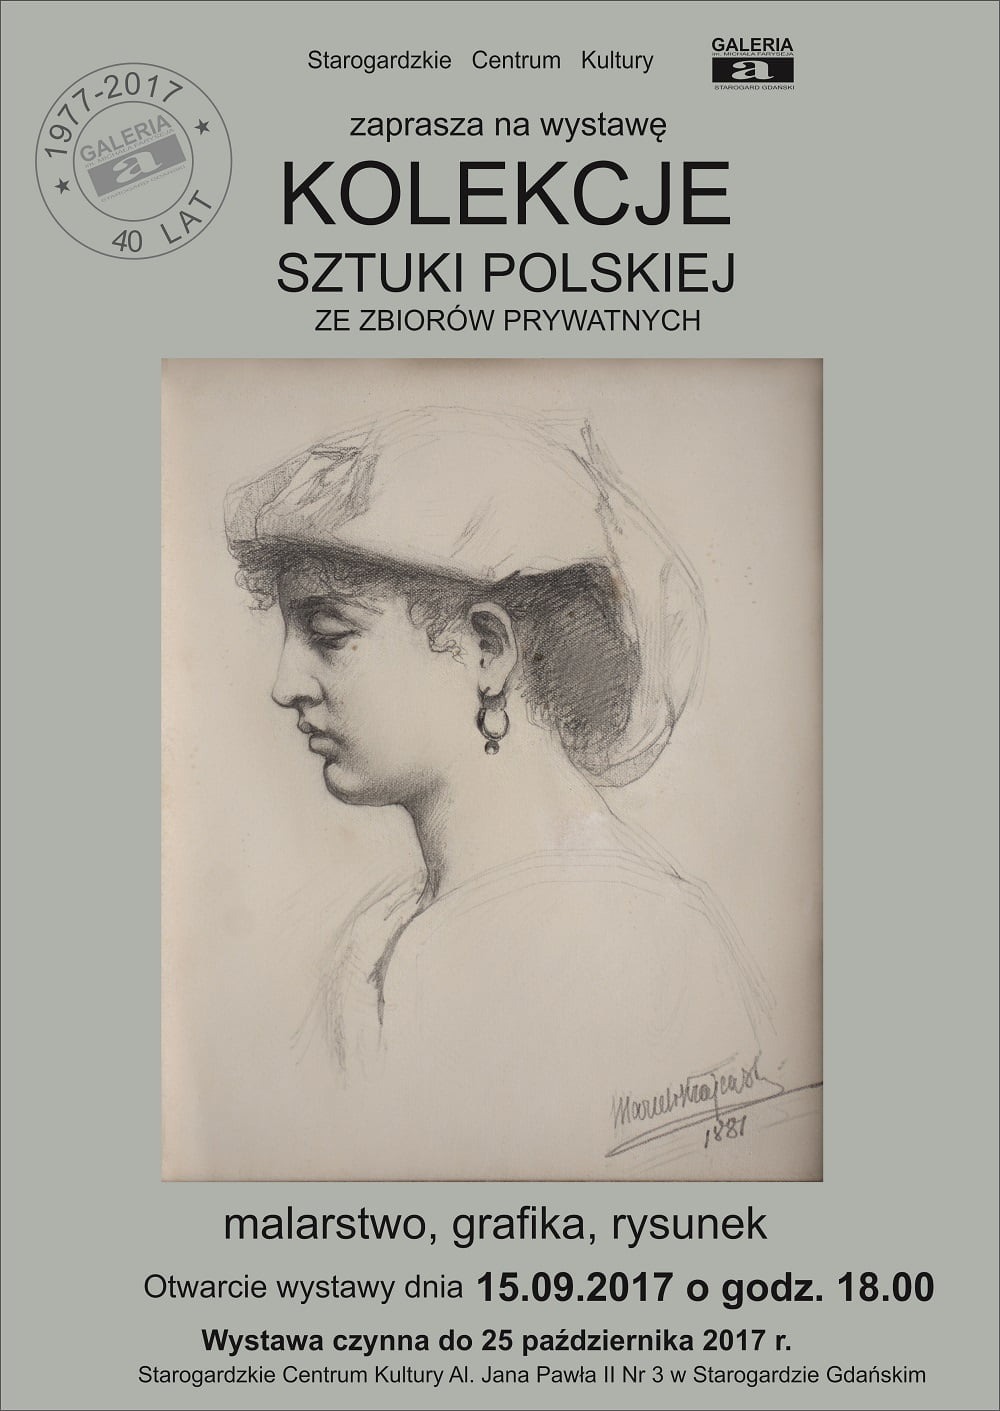 Kolekcje Sztuki Polskiej ze zbiorów prywatnych